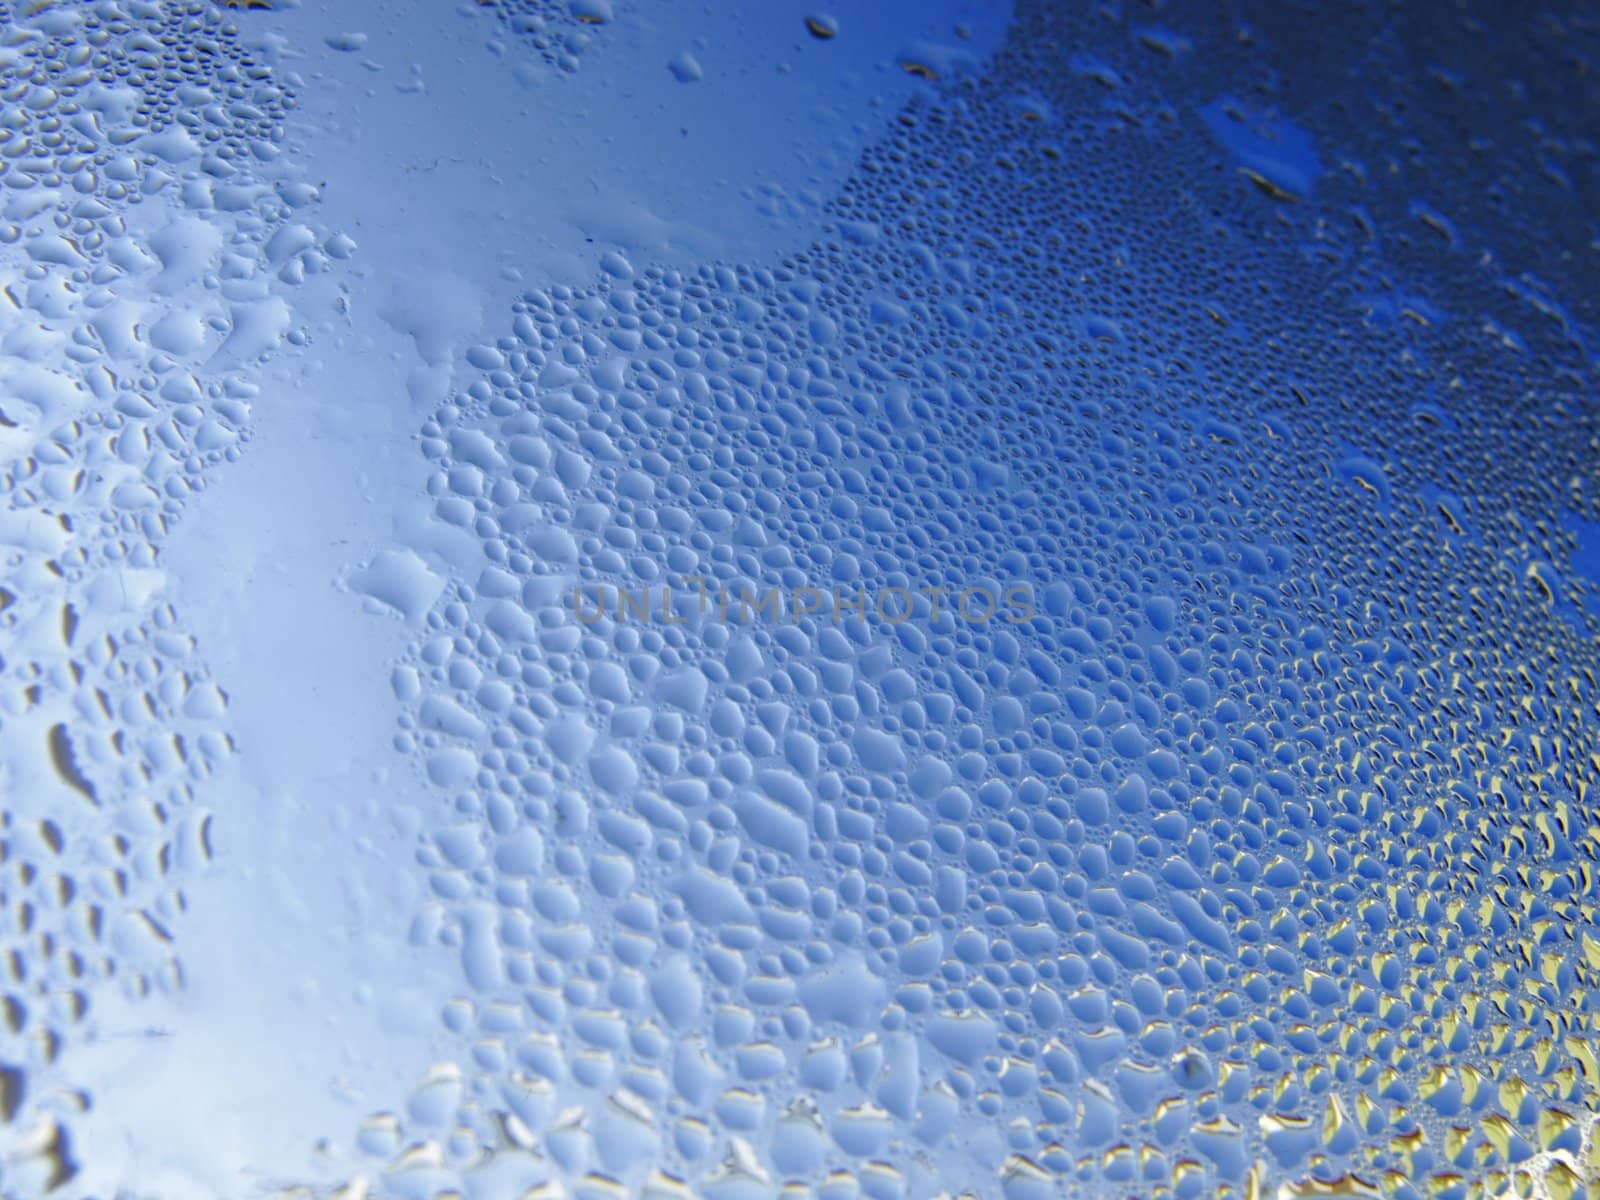 drops of water in a window